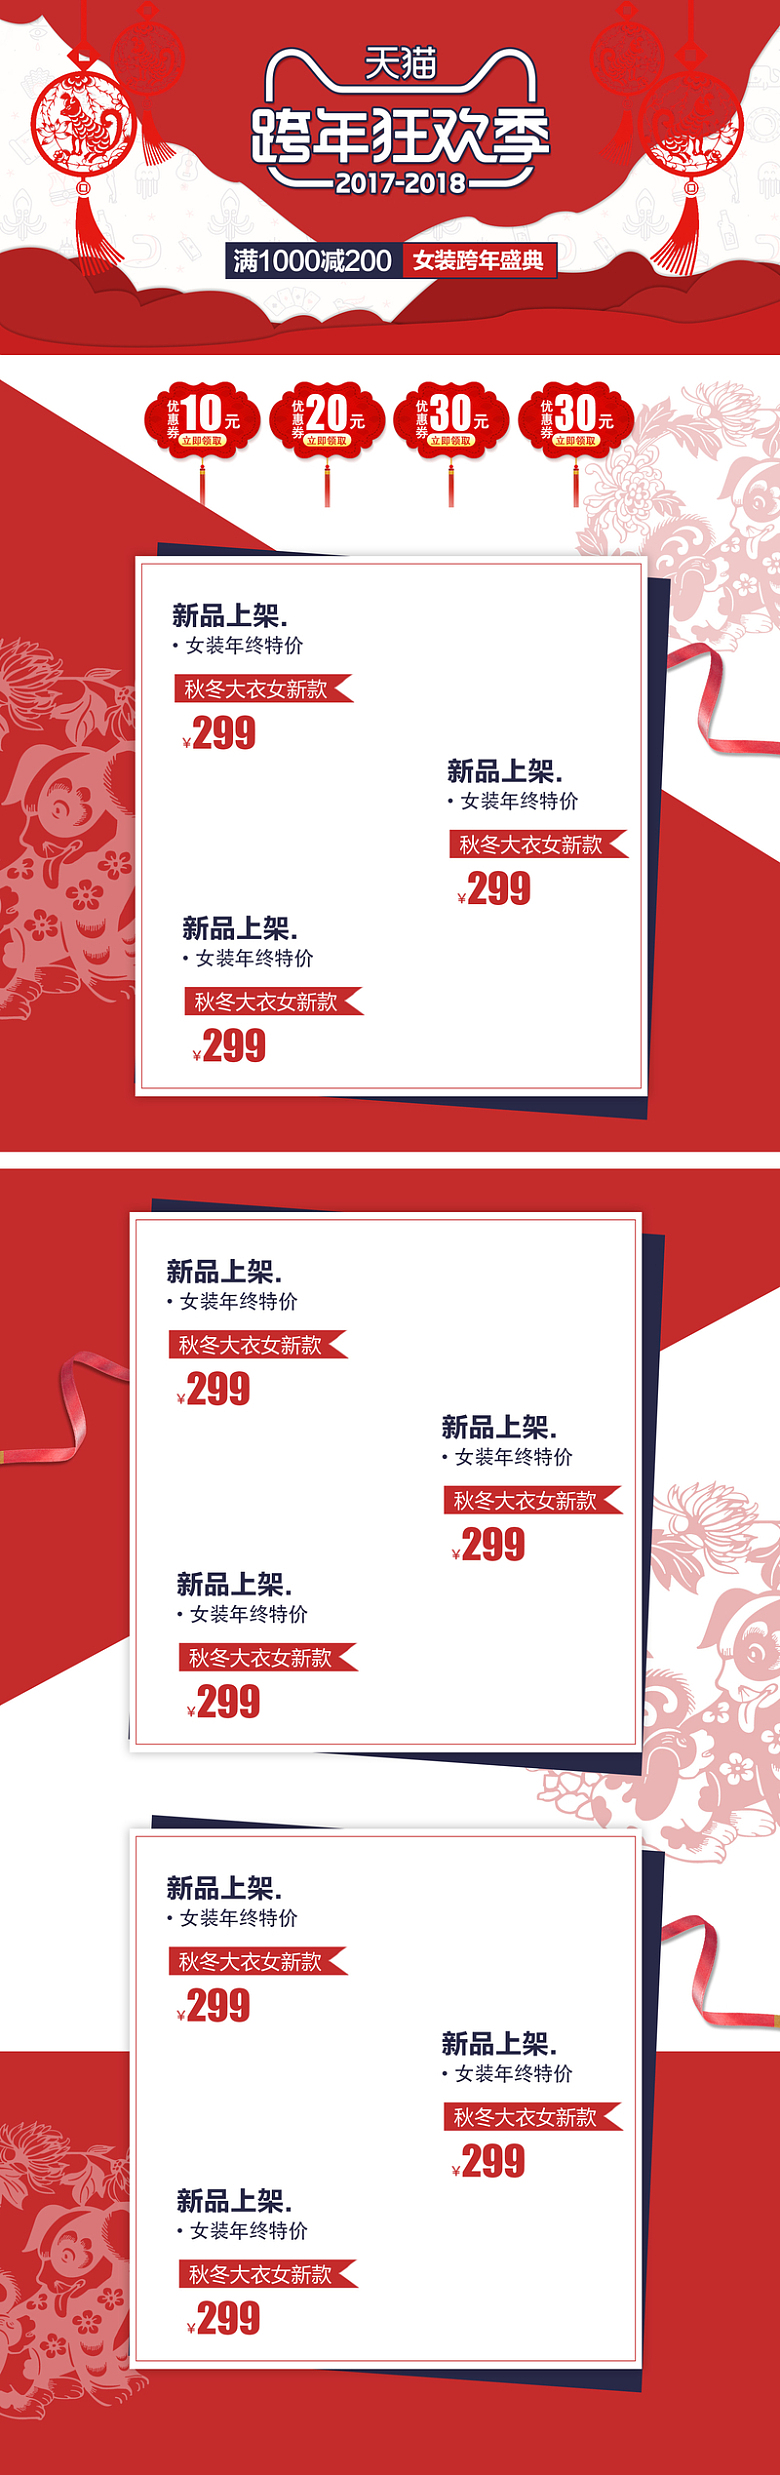 天猫跨年狂欢季中国风红色喜庆店铺首页